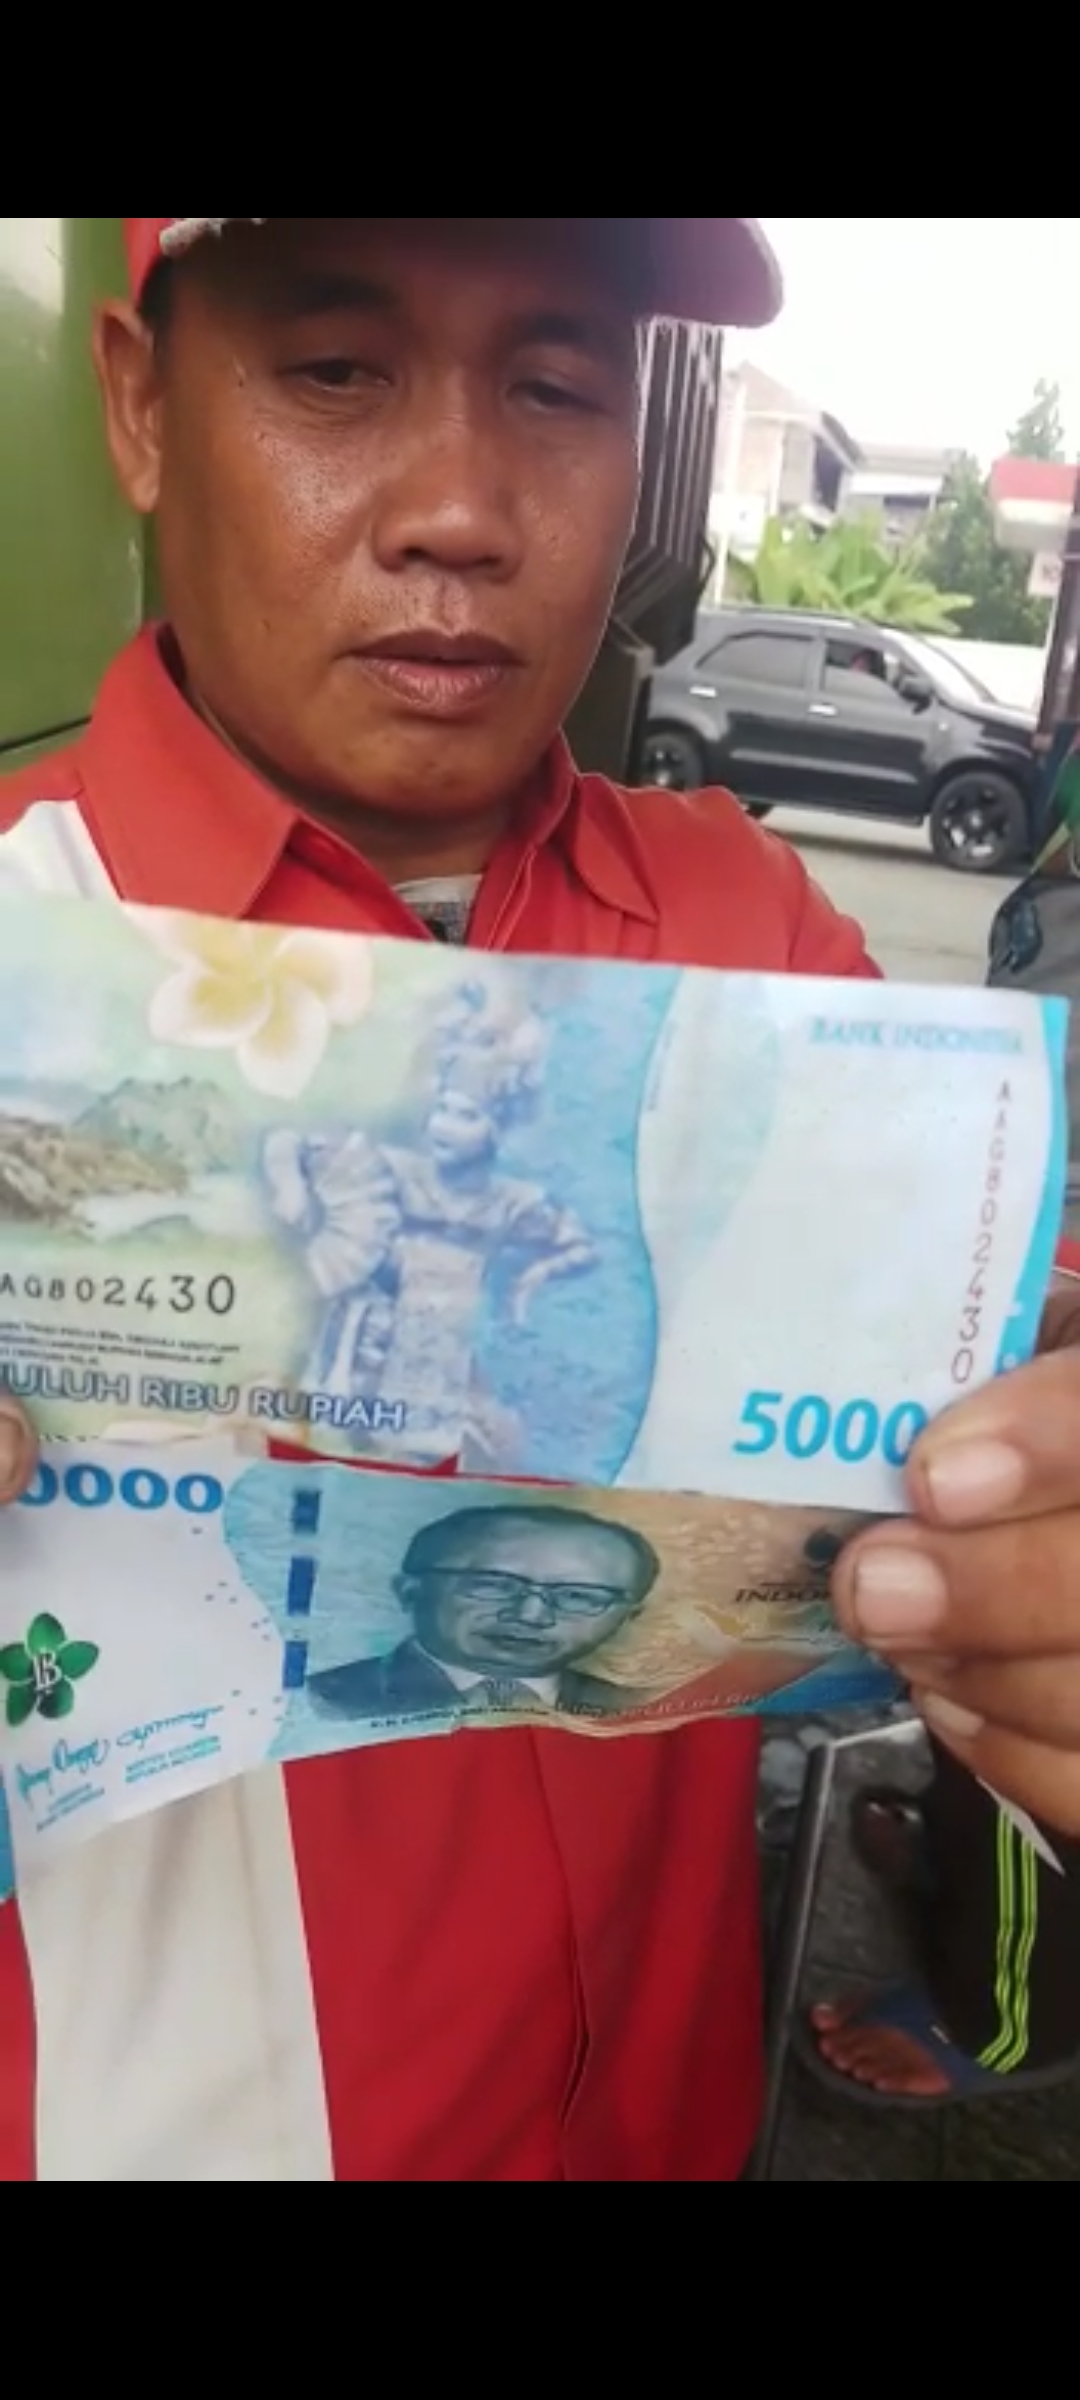 Waspada! Uang Palsu Beredar di Bengkulu Selatan, SPBU Kutau Jadi Korban